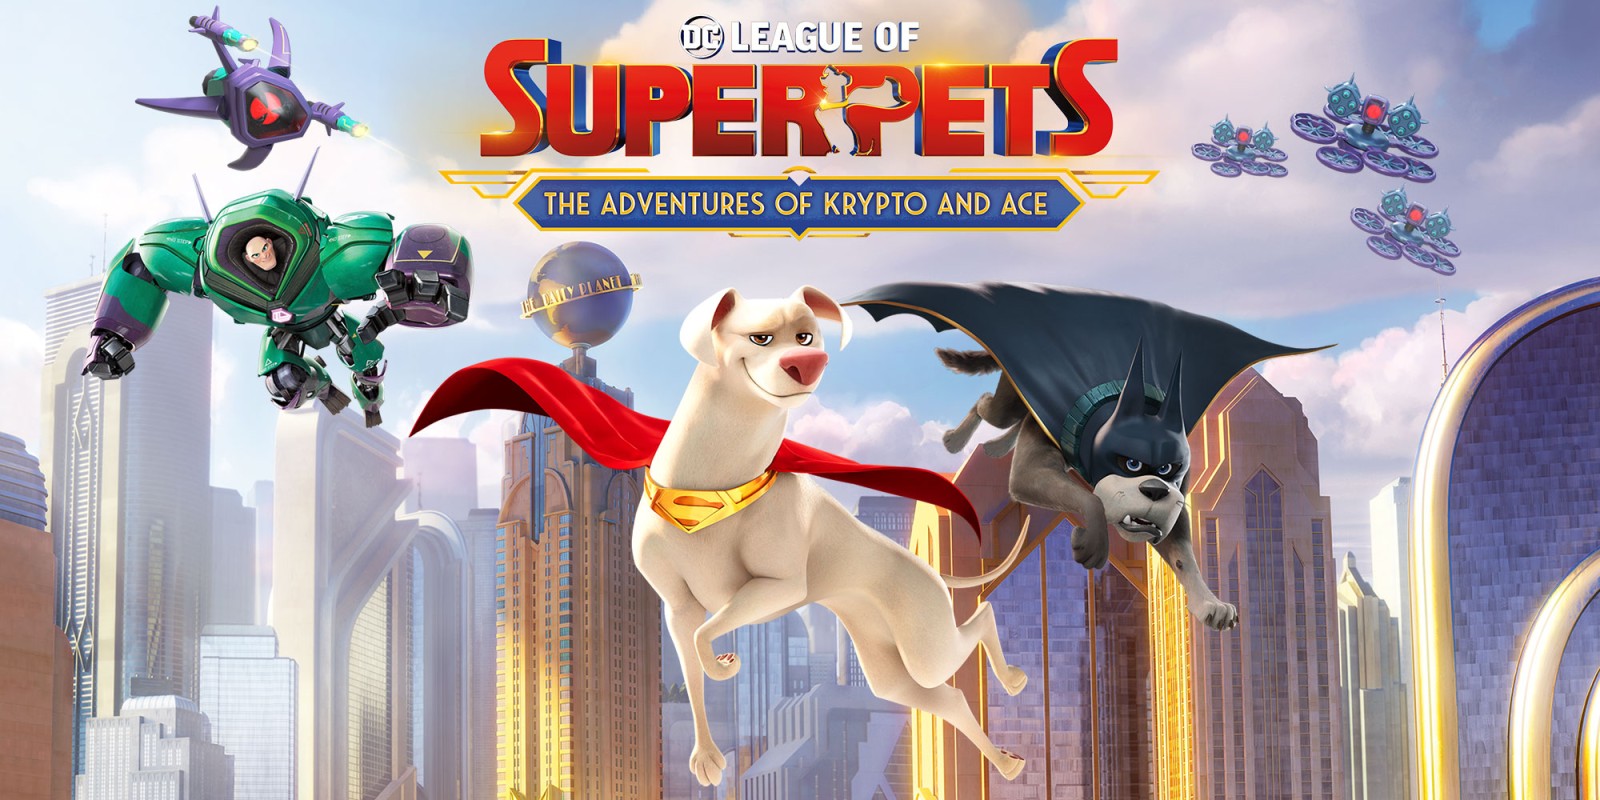 Annunciato il collegamento al film Super Pet della DC